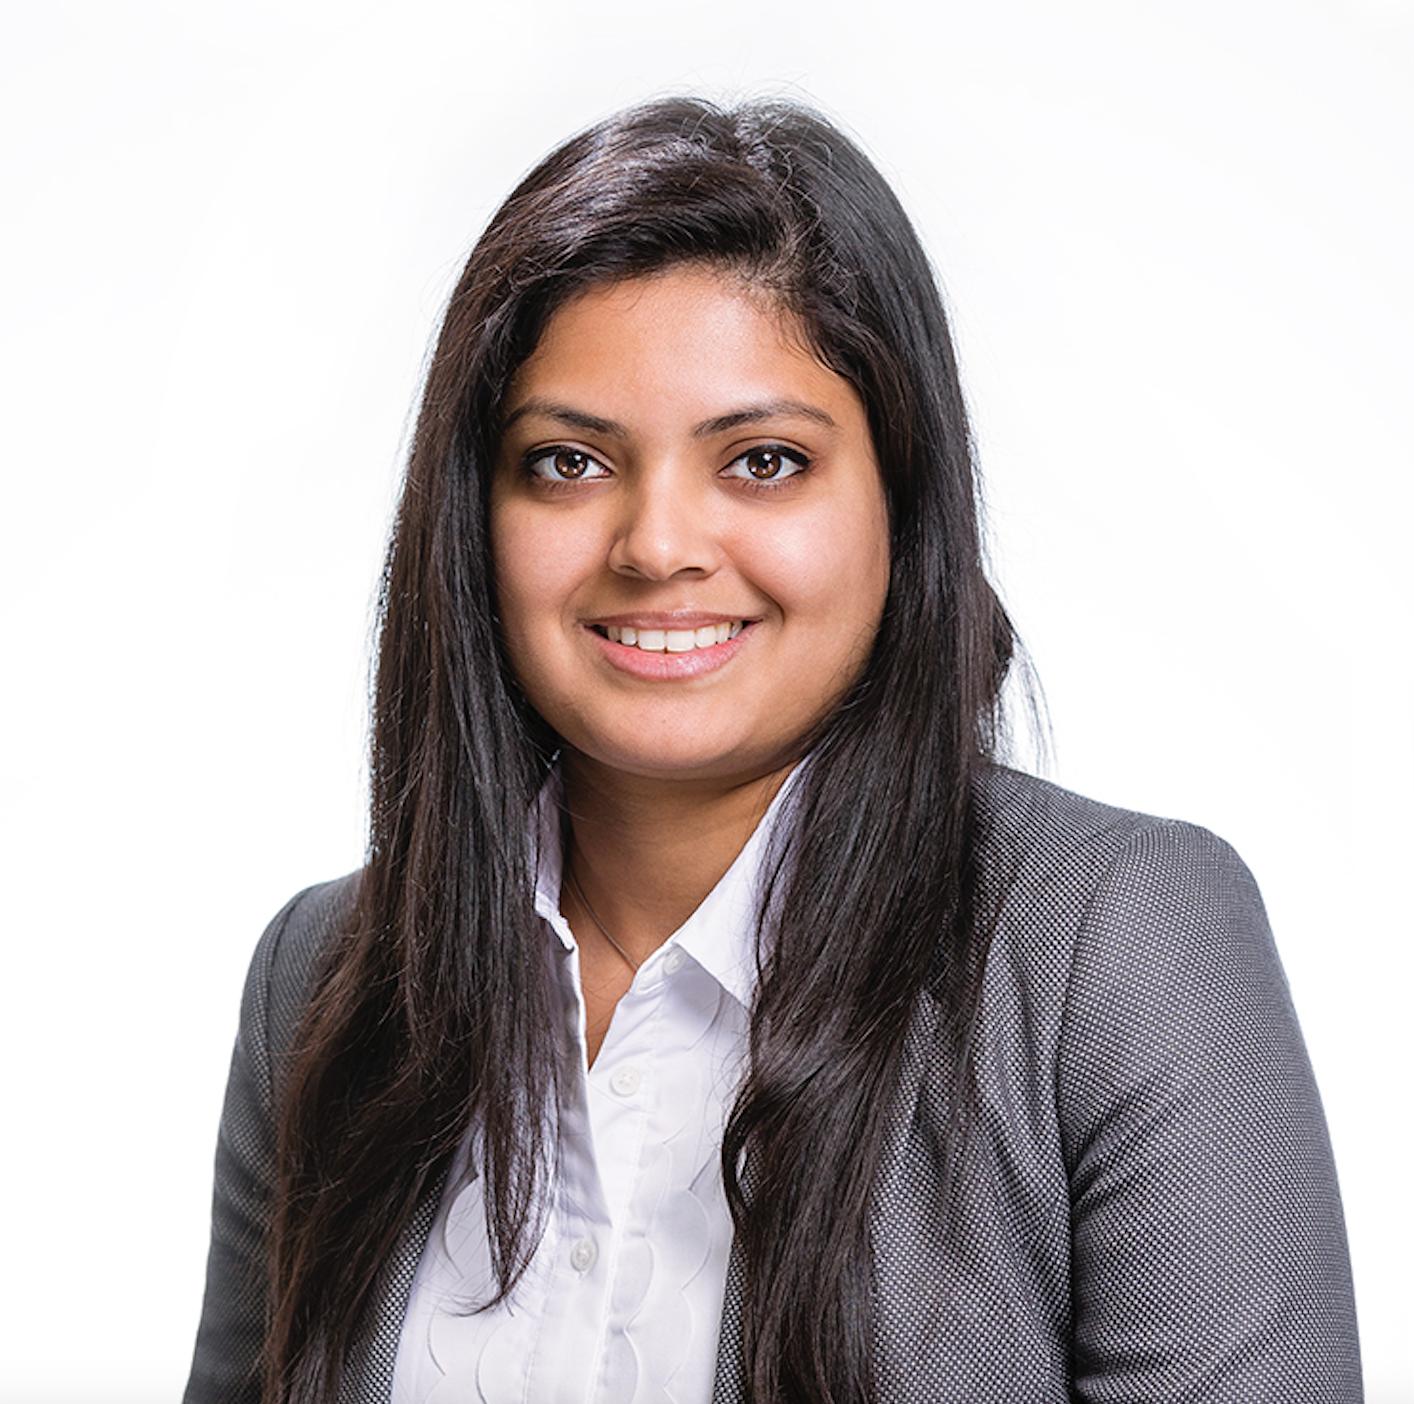 Kyasha Sri Ranjan is an engagement manager at Lifescience Dynamics.